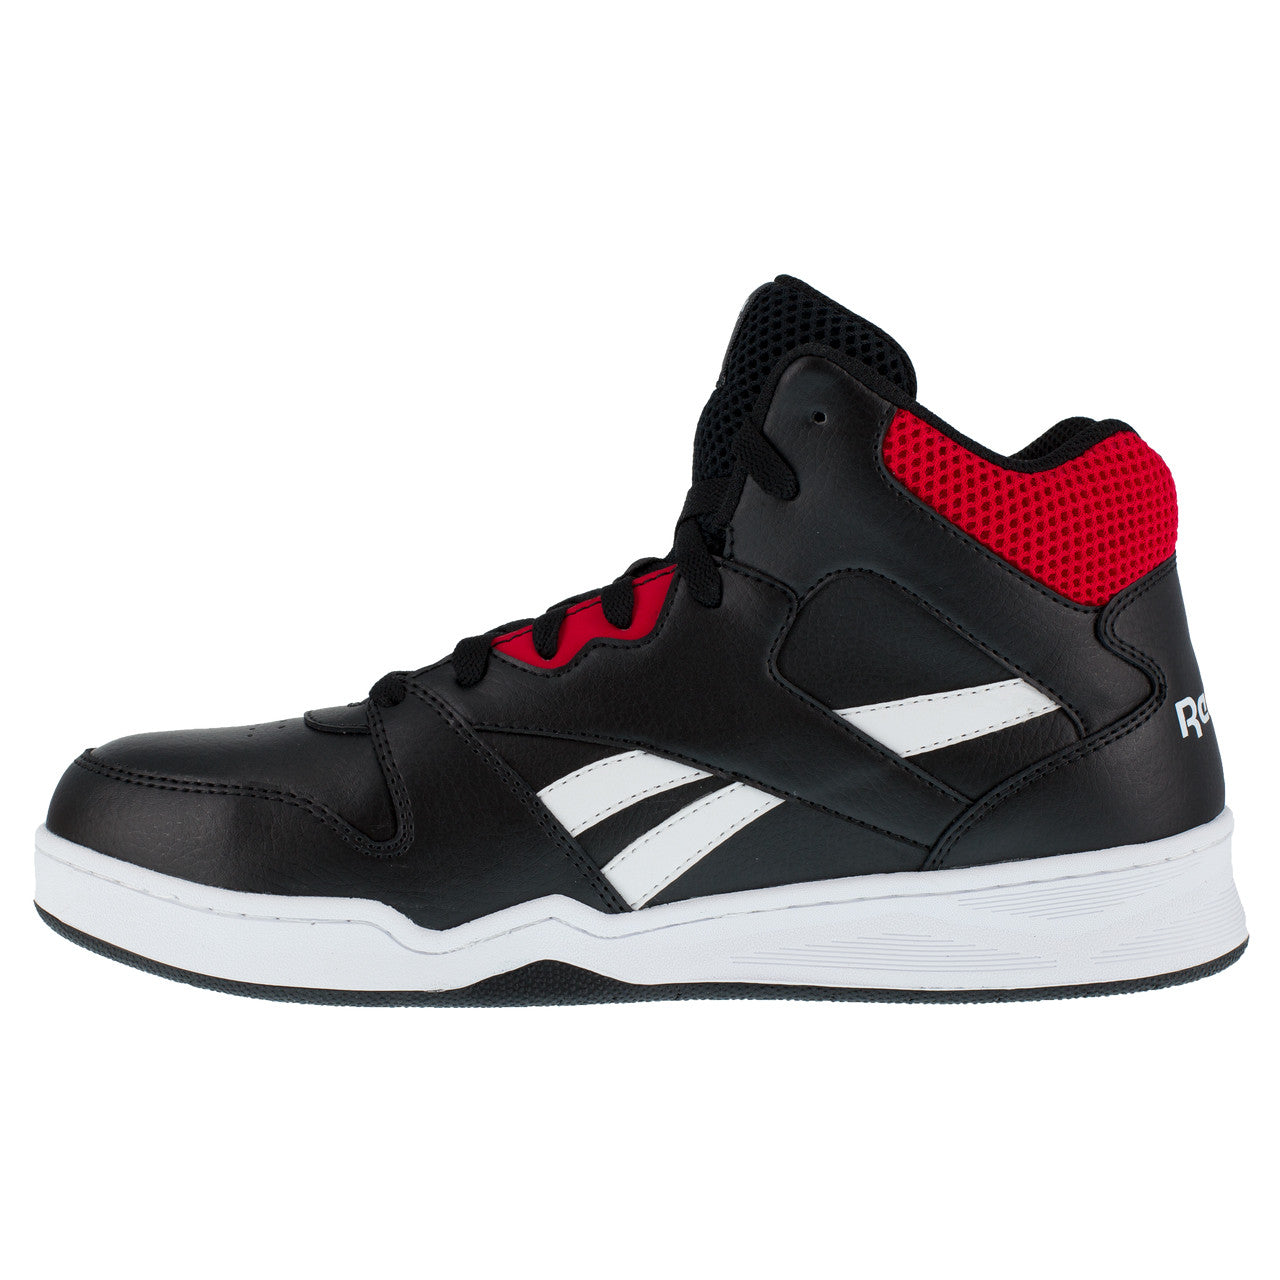 Zapato de seguridad de caña alta Negra y Roja Reebok IB4132S3  - 3